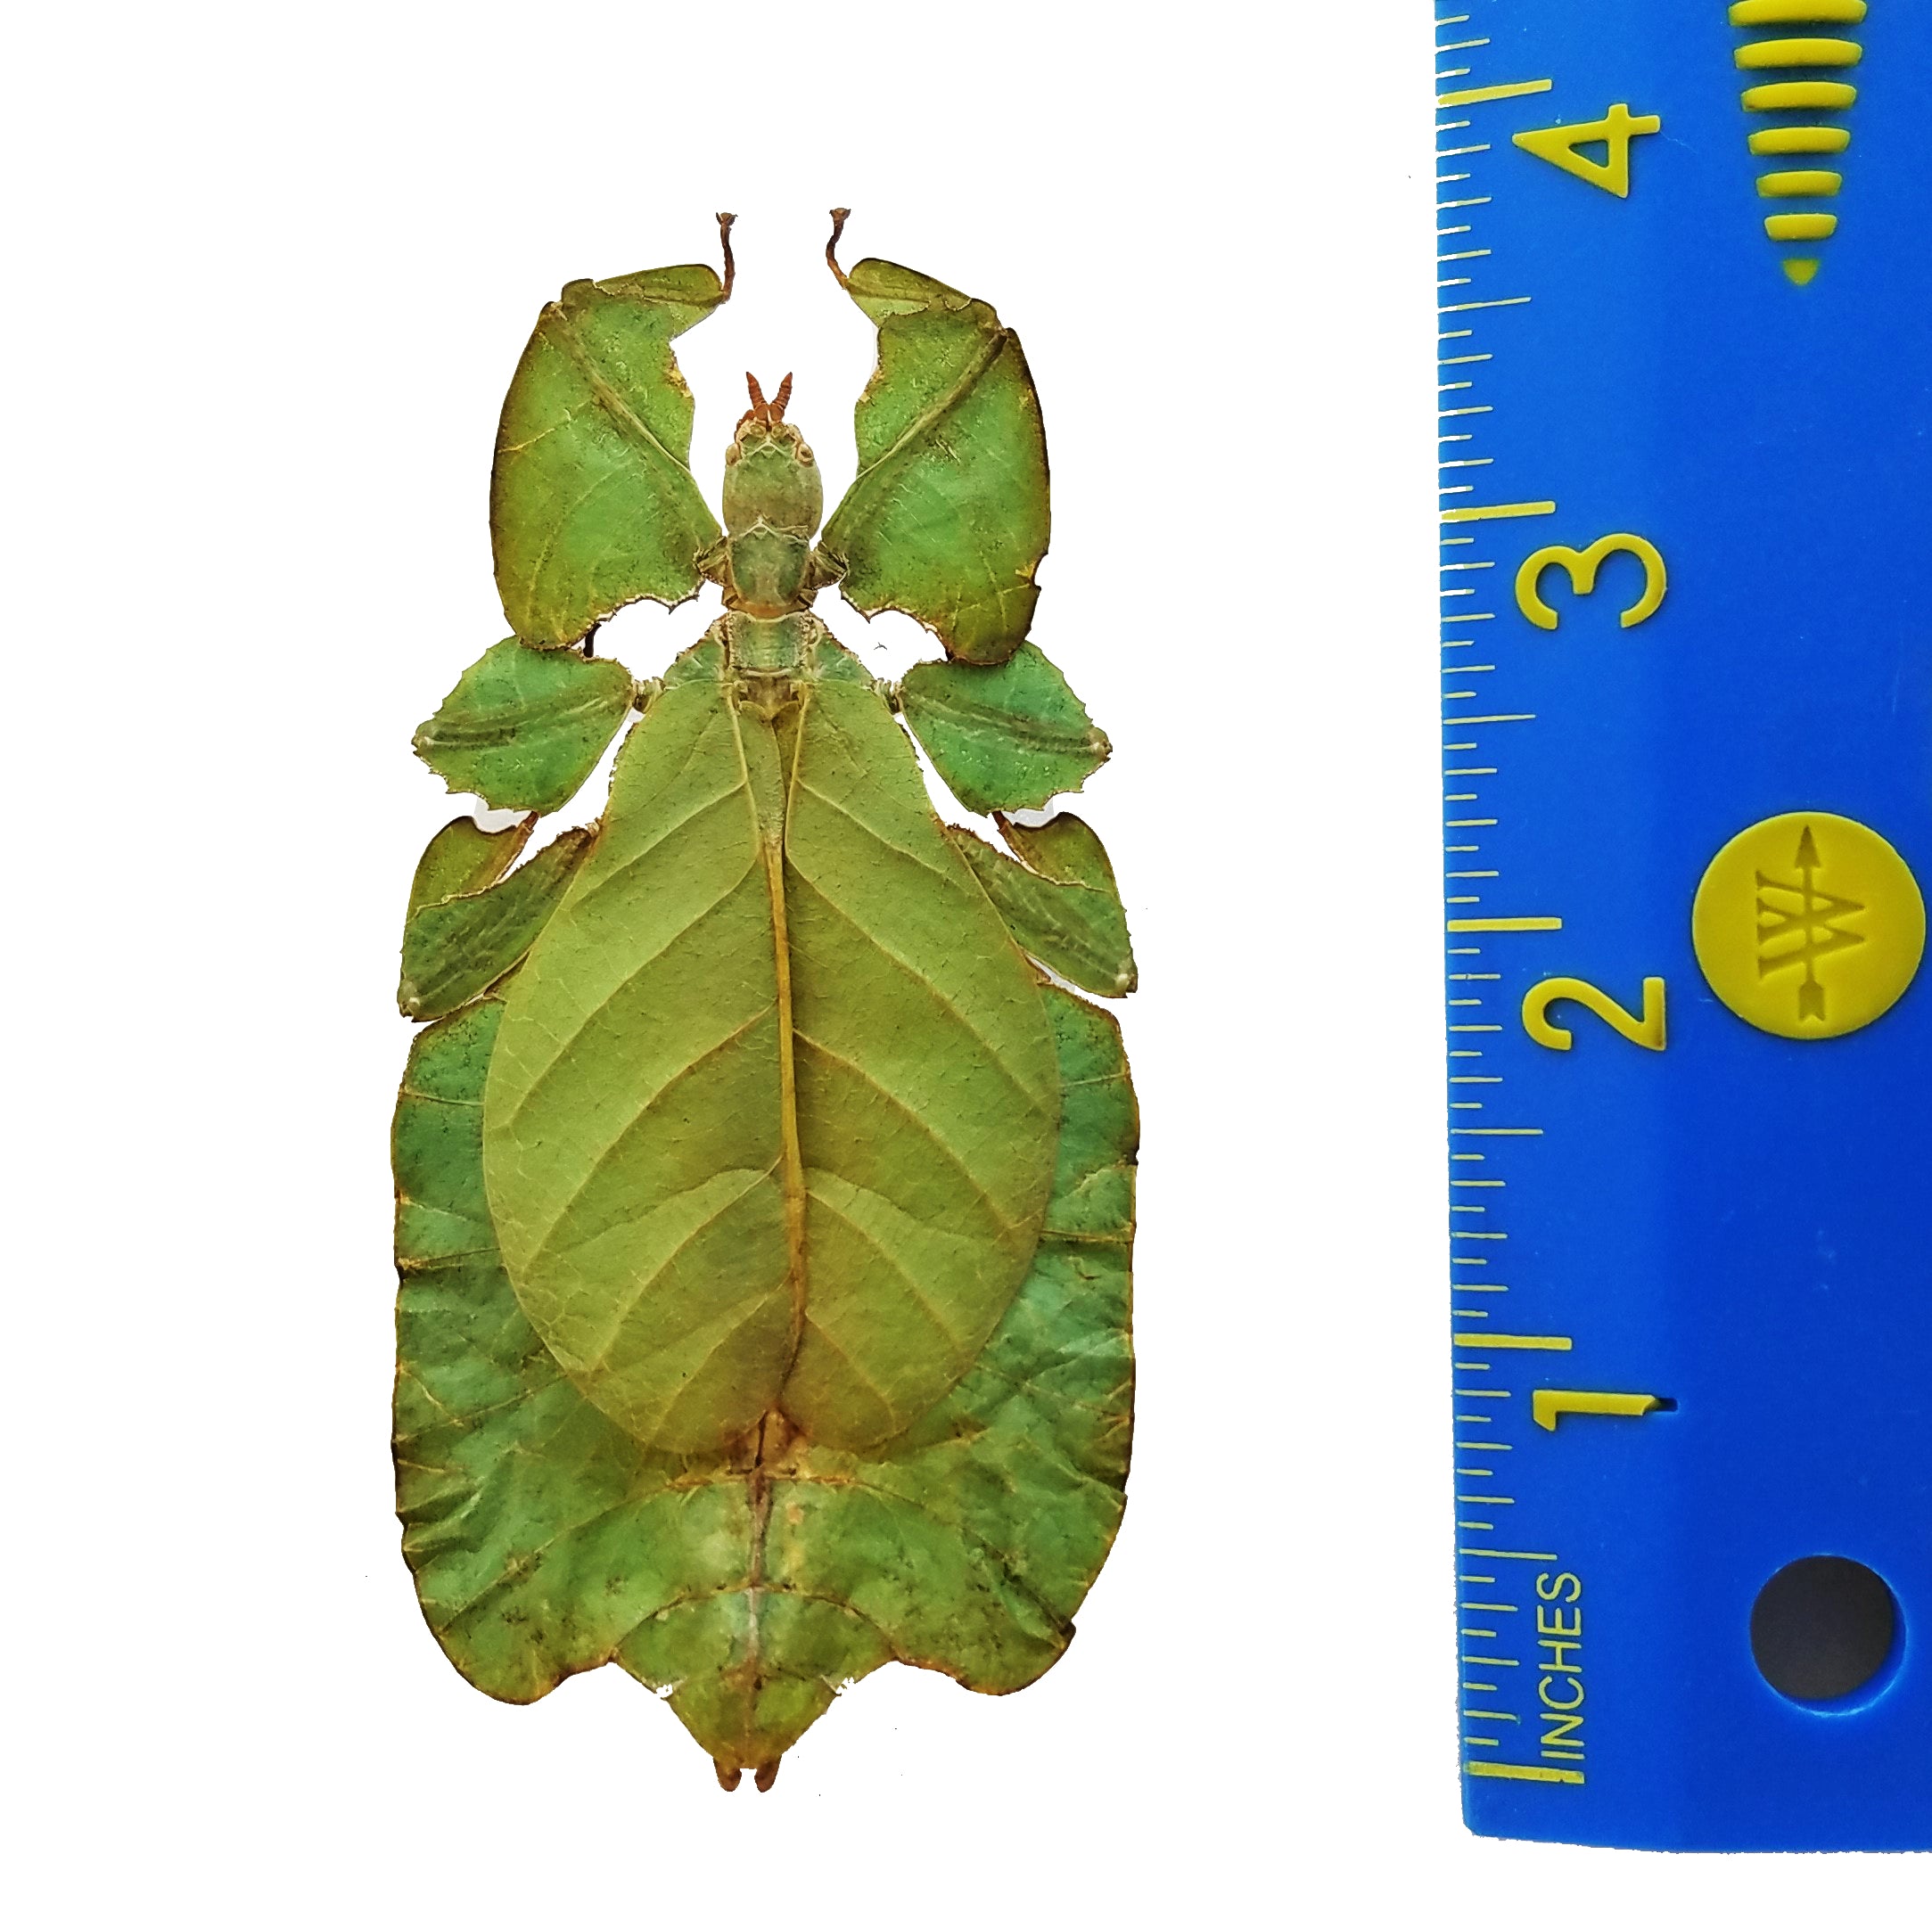 Phyllium pulchrifolium, leaf insect - Little Caterpillar Art Little Caterpillar Art  